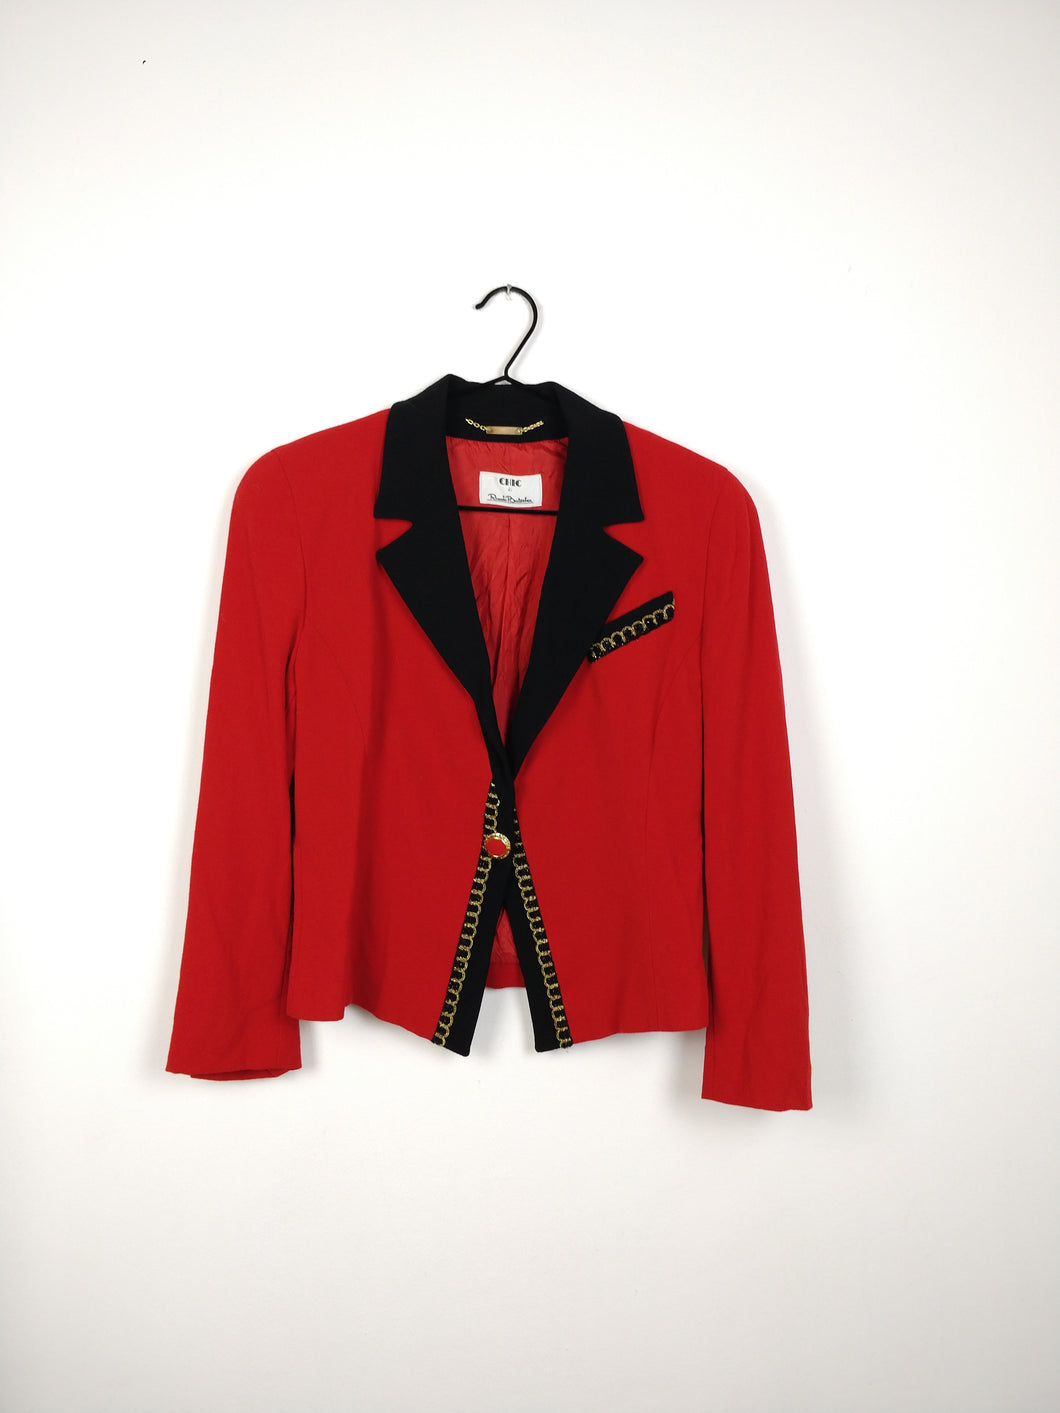 The Red Wool Blazer | Vintage 80s designer Chic de Renato Balestra red black gold blazer jacket S IT44